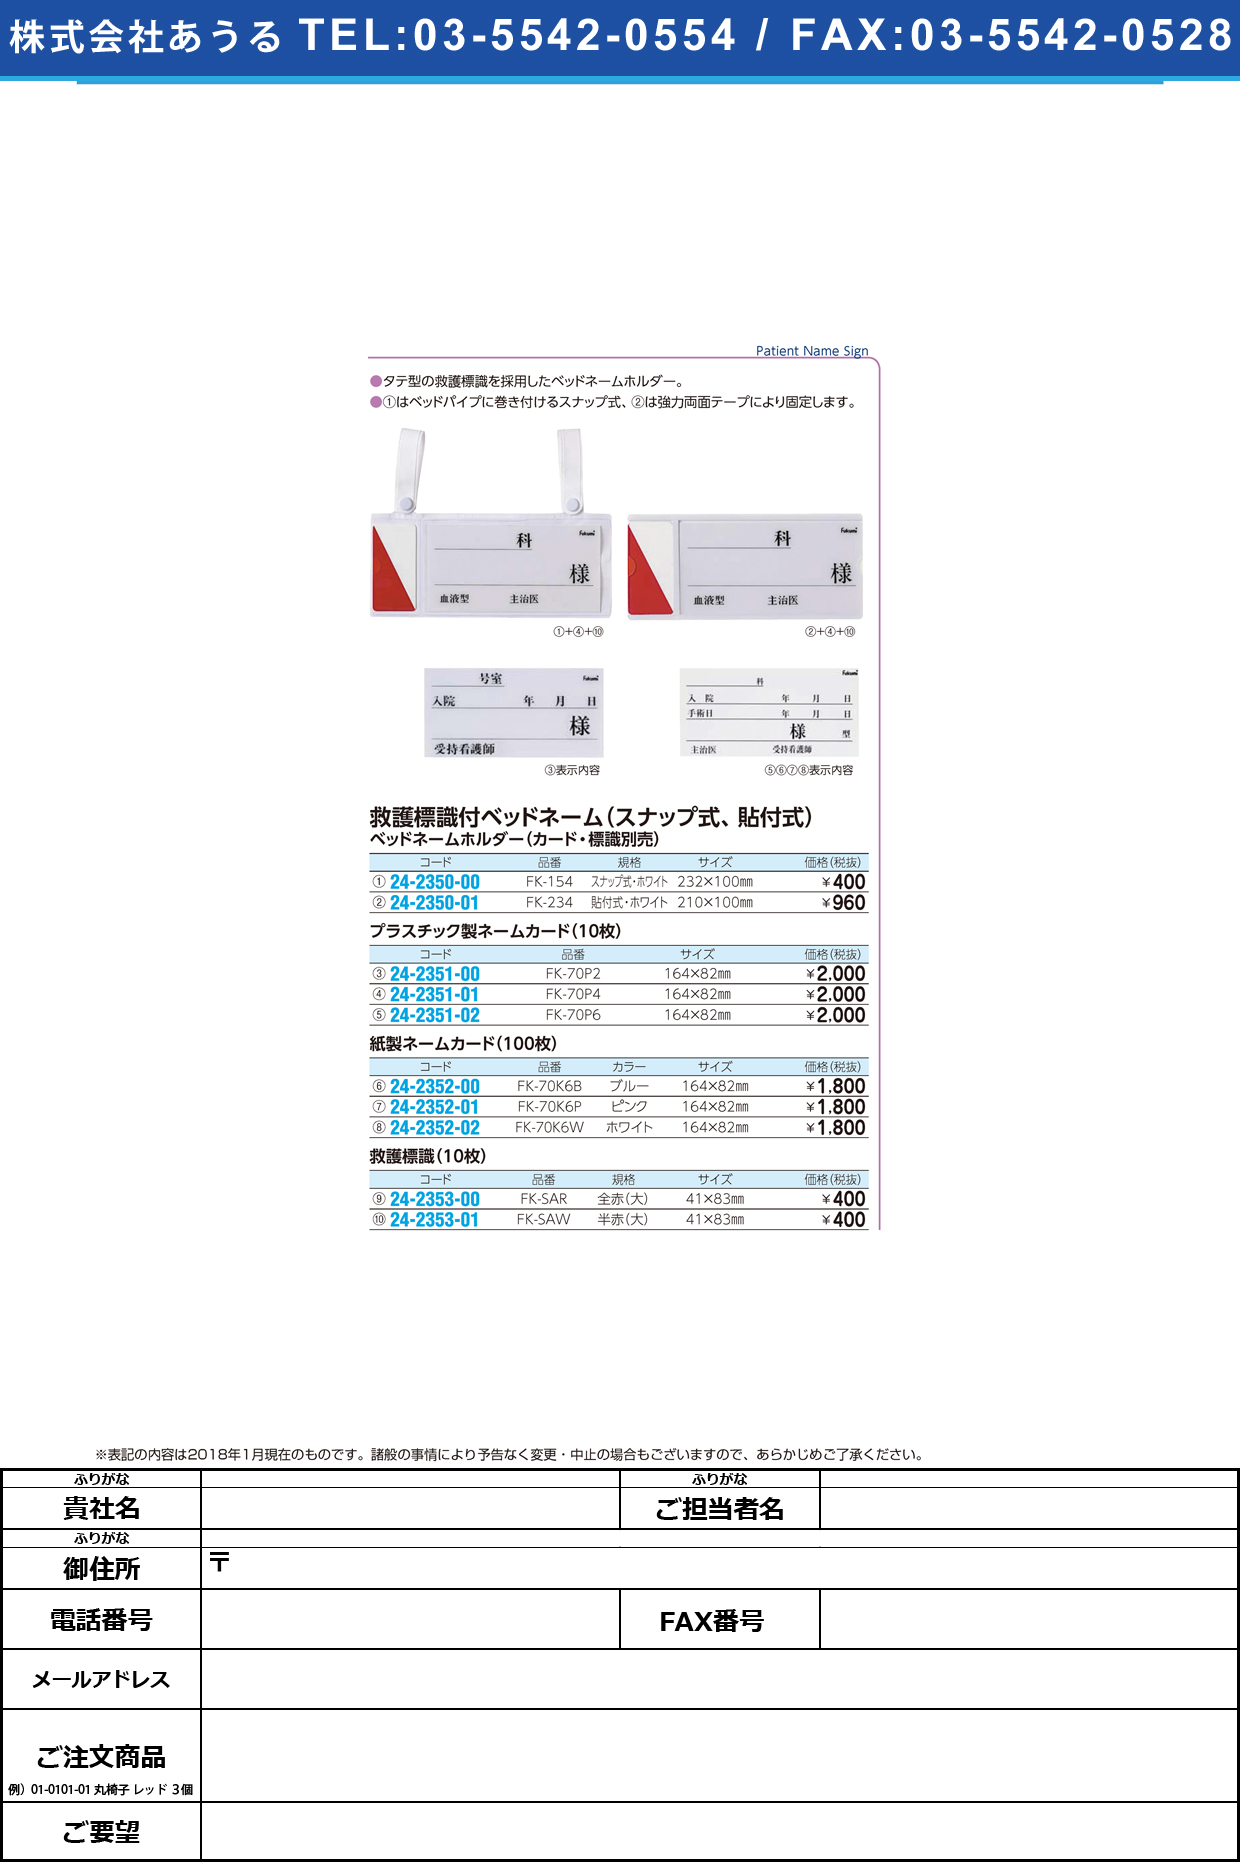 (24-2350-00)ベッドネームホルダー FK-154(ｽﾅｯﾌﾟｼｷ) ﾍﾞｯﾄﾞﾈｰﾑﾎﾙﾀﾞｰ【1枚単位】【2019年カタログ商品】